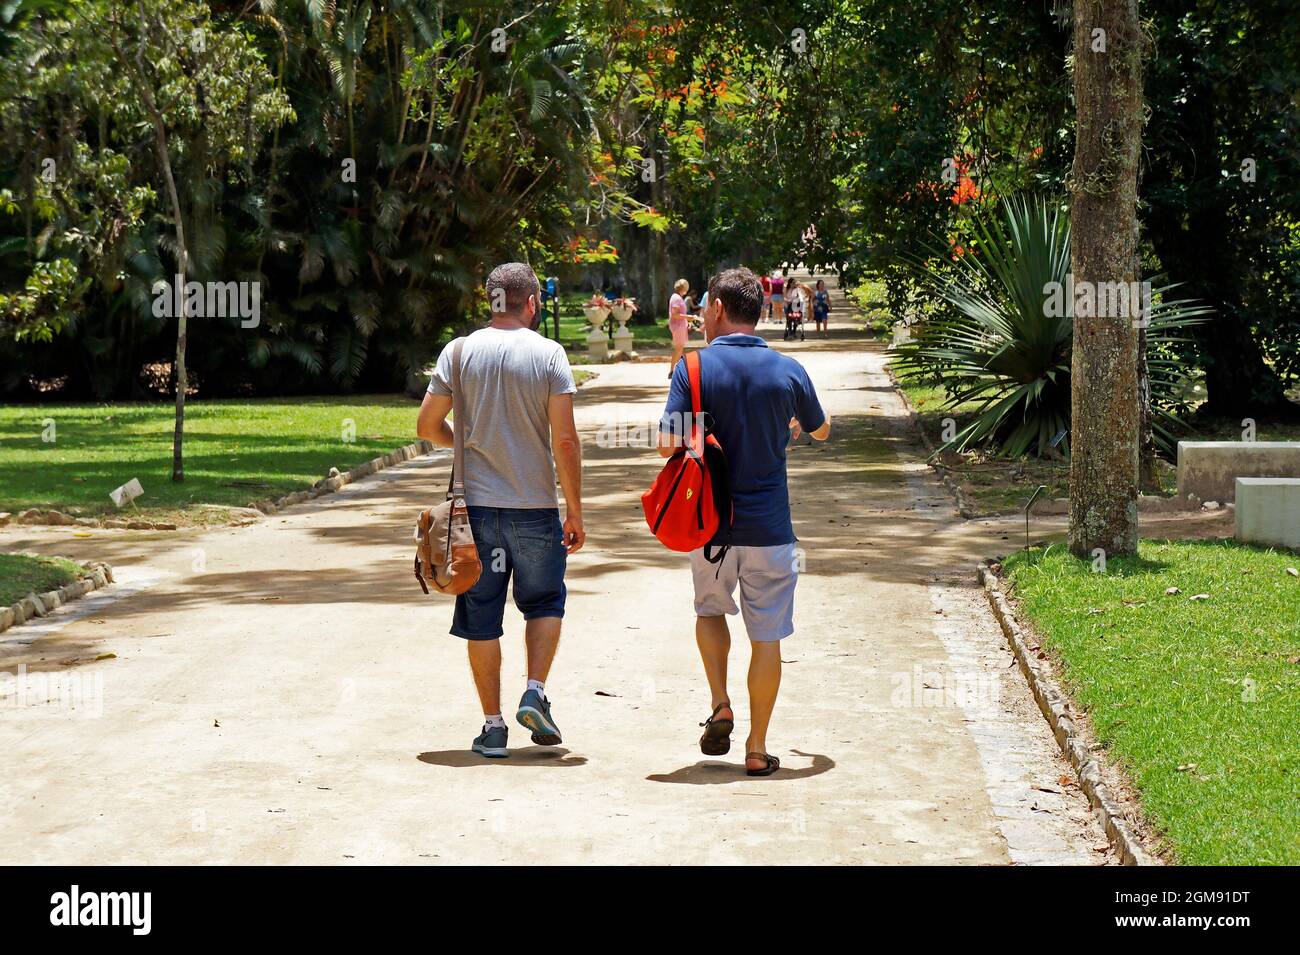 RIO DE JANEIRO, BRAZIL - DECEMBER 1, 2019: Gay men couple walking in the park Stock Photo